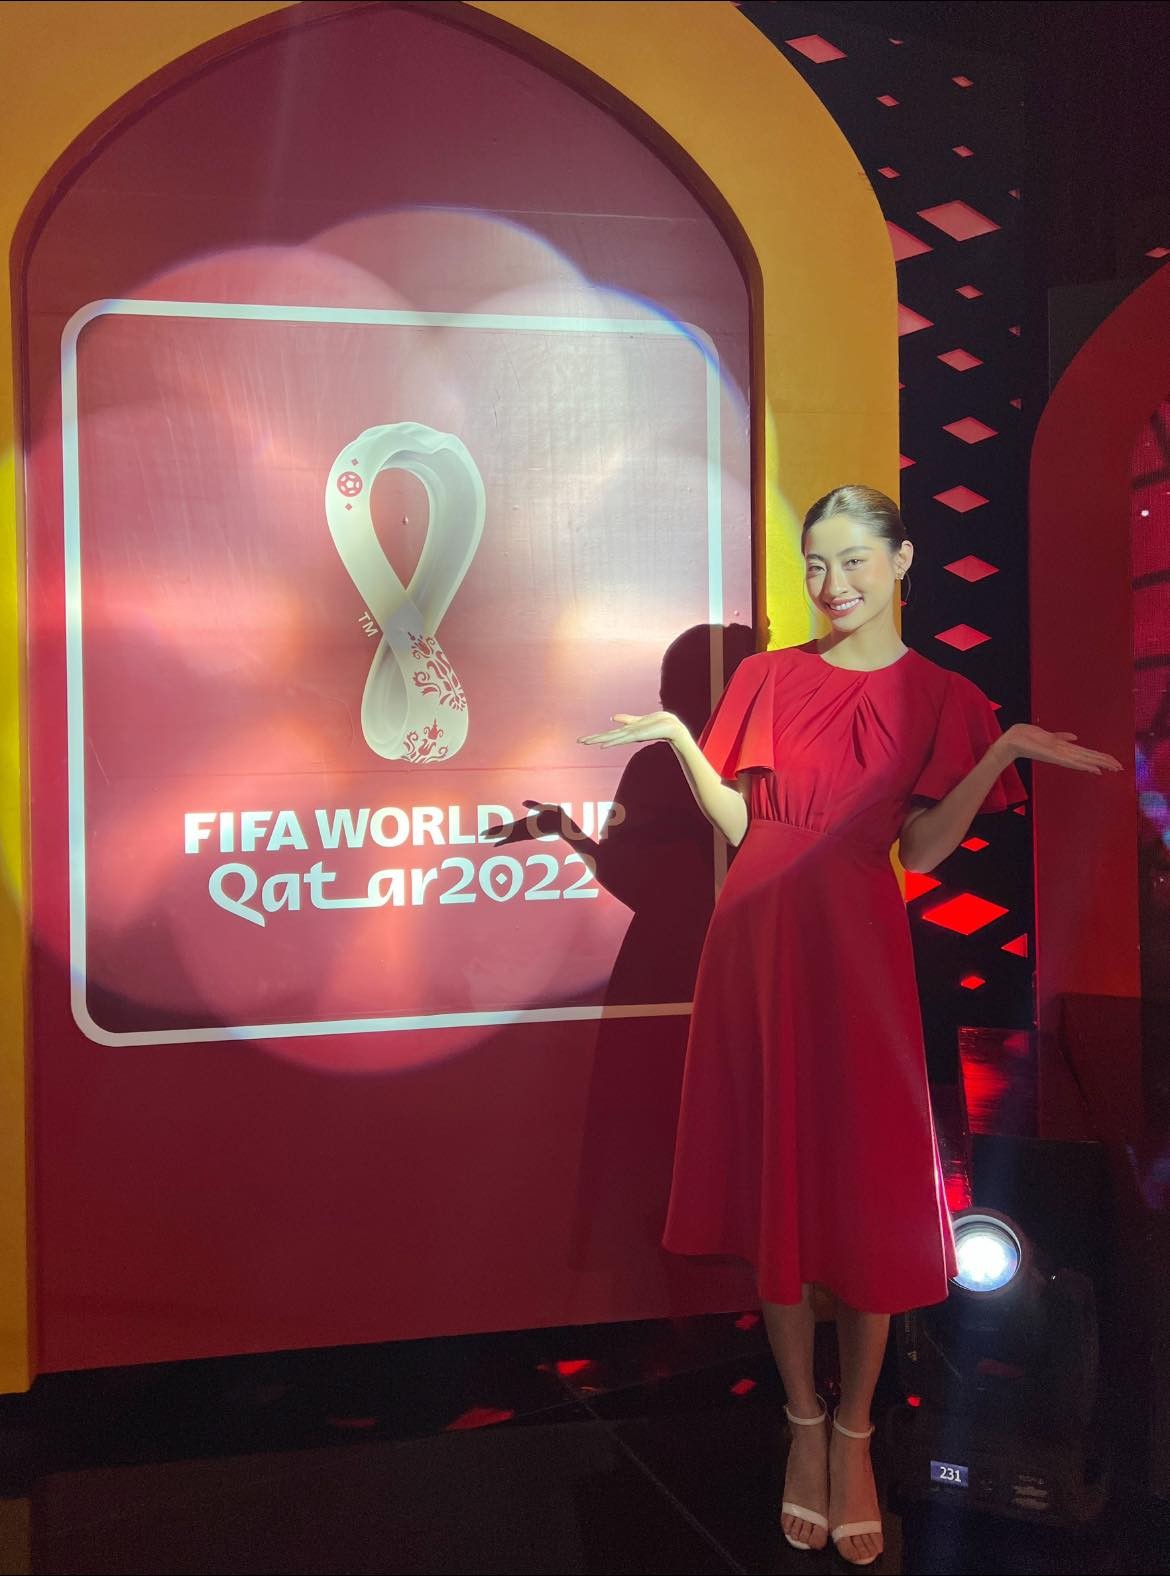 VTV mời hoa hậu thay hotgirl bình World Cup, Lương Thùy Linh được khen tới tấp